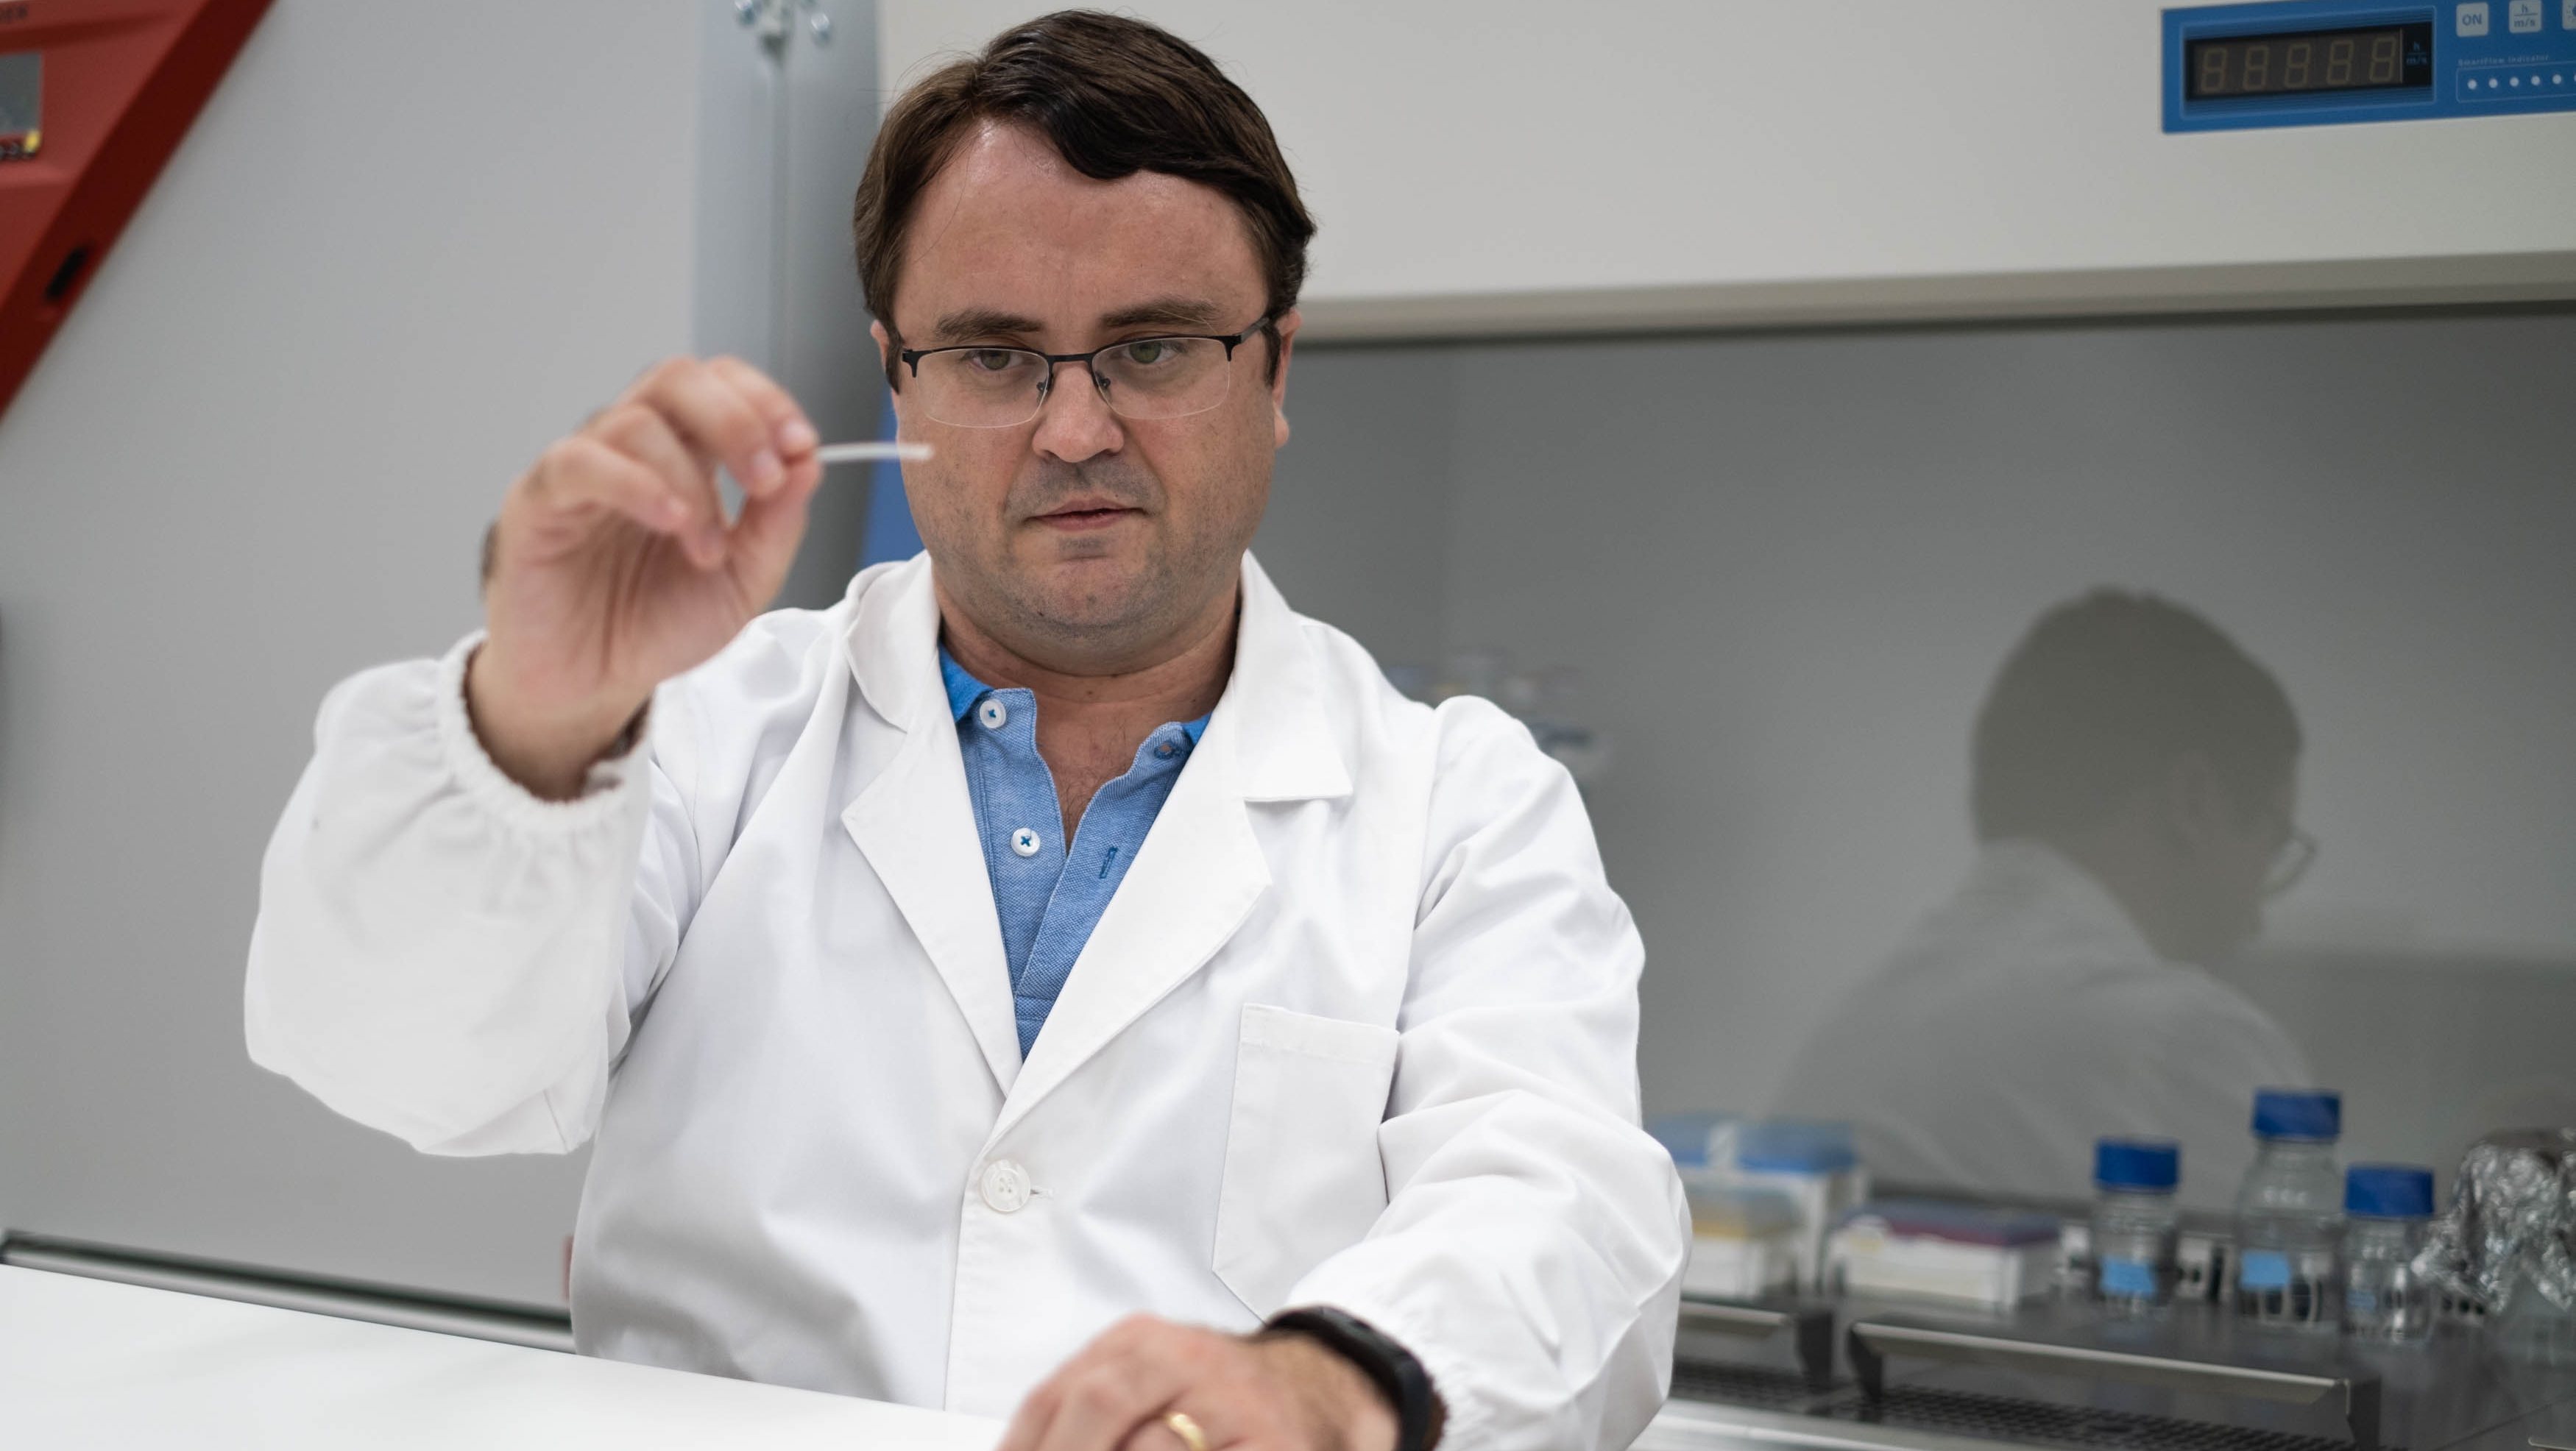 Licenciado e doutorado em Engenharia Química, Jorge Coelho desenvolveu a possibilidade de produção de tubos-guia personalizados para regenerar nervos danificados